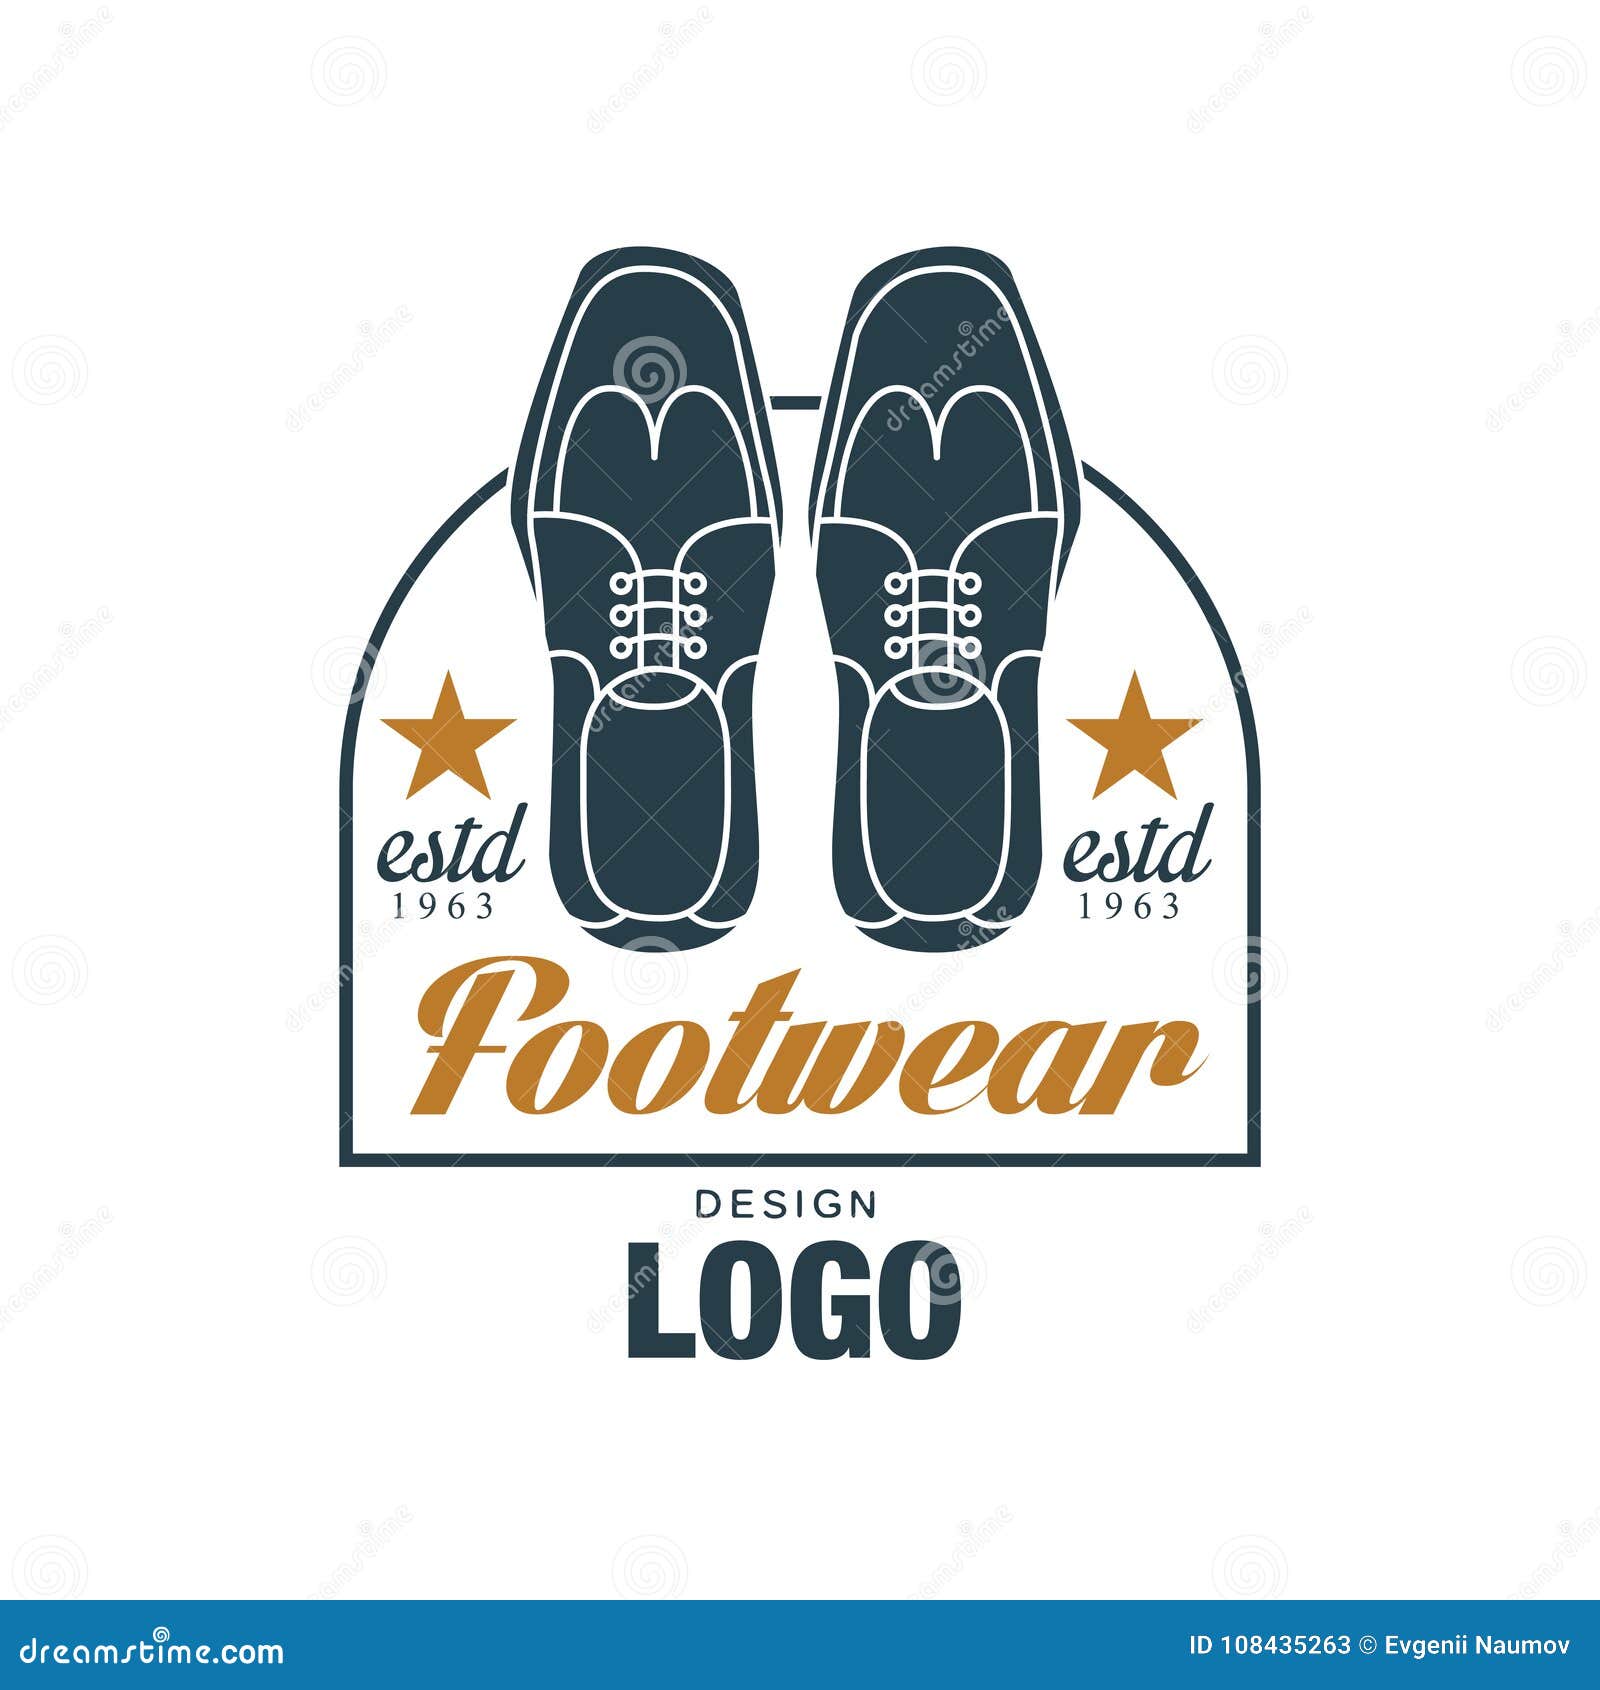 Footwear Logo Design, Estd 1963, Vintage Badge for Shoemaker, Shoe Shop ...